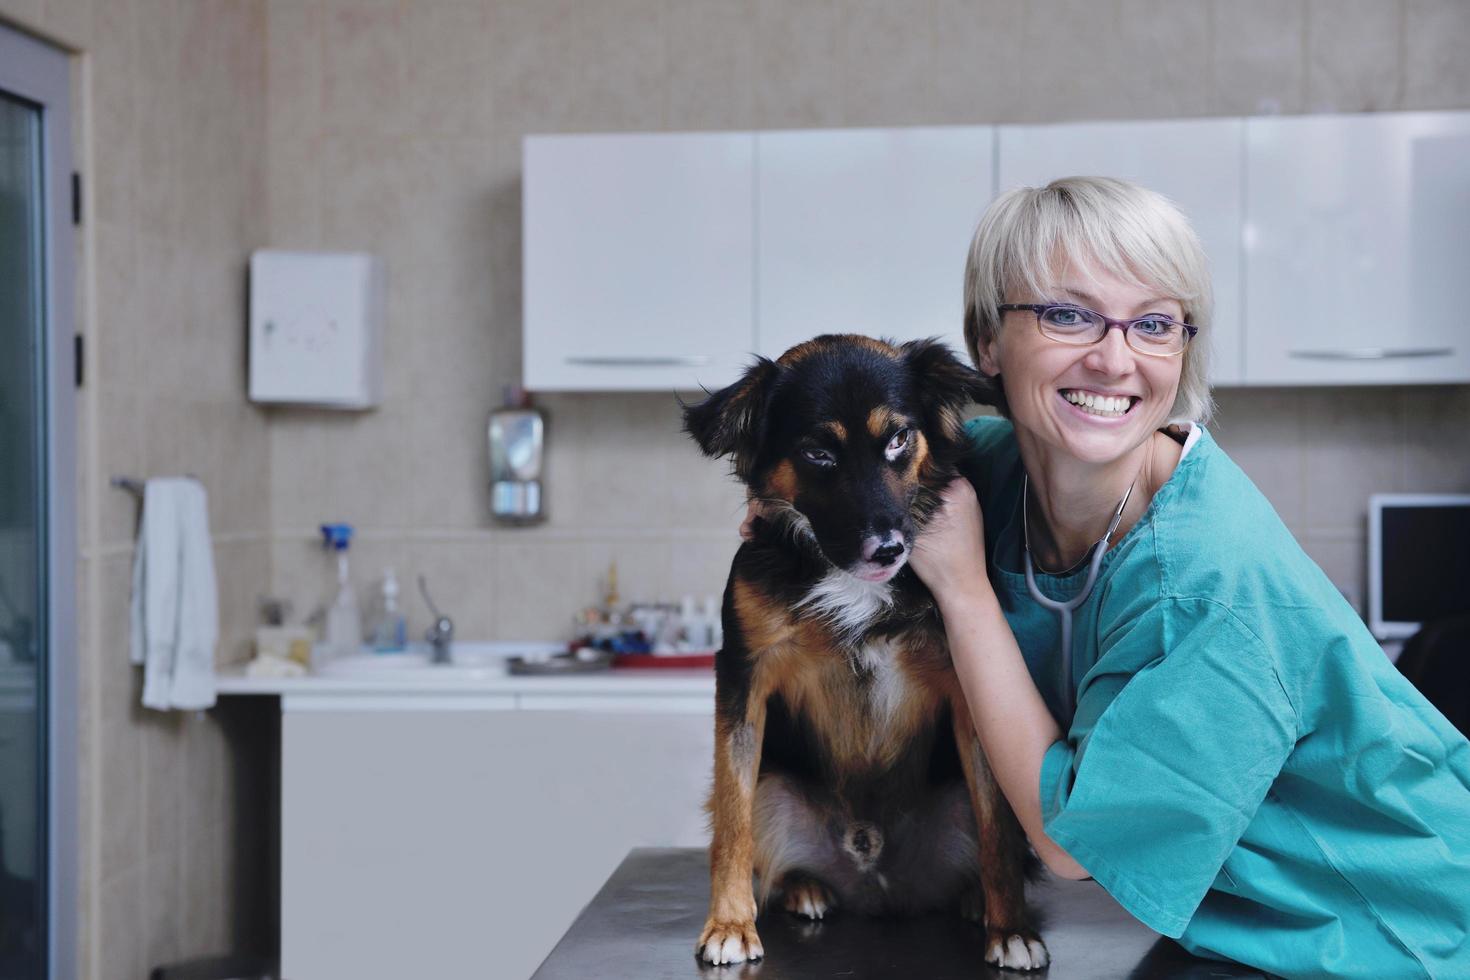 veterinär och assistent i en liten djurklinik foto